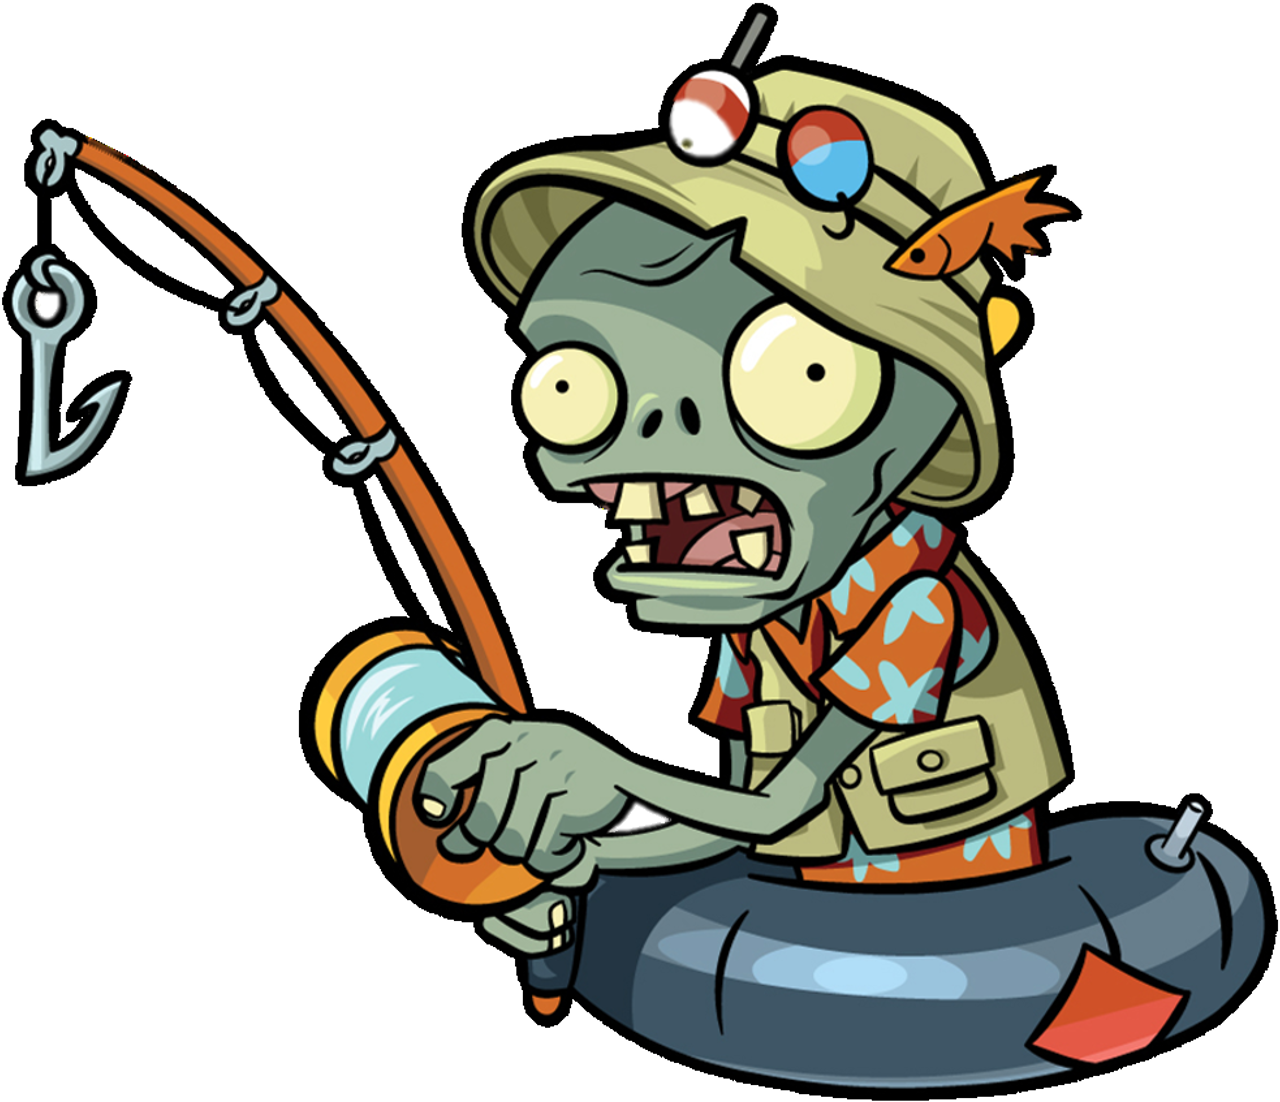 Fisherman Zombie - Fisherman Zombie (1298x1125)